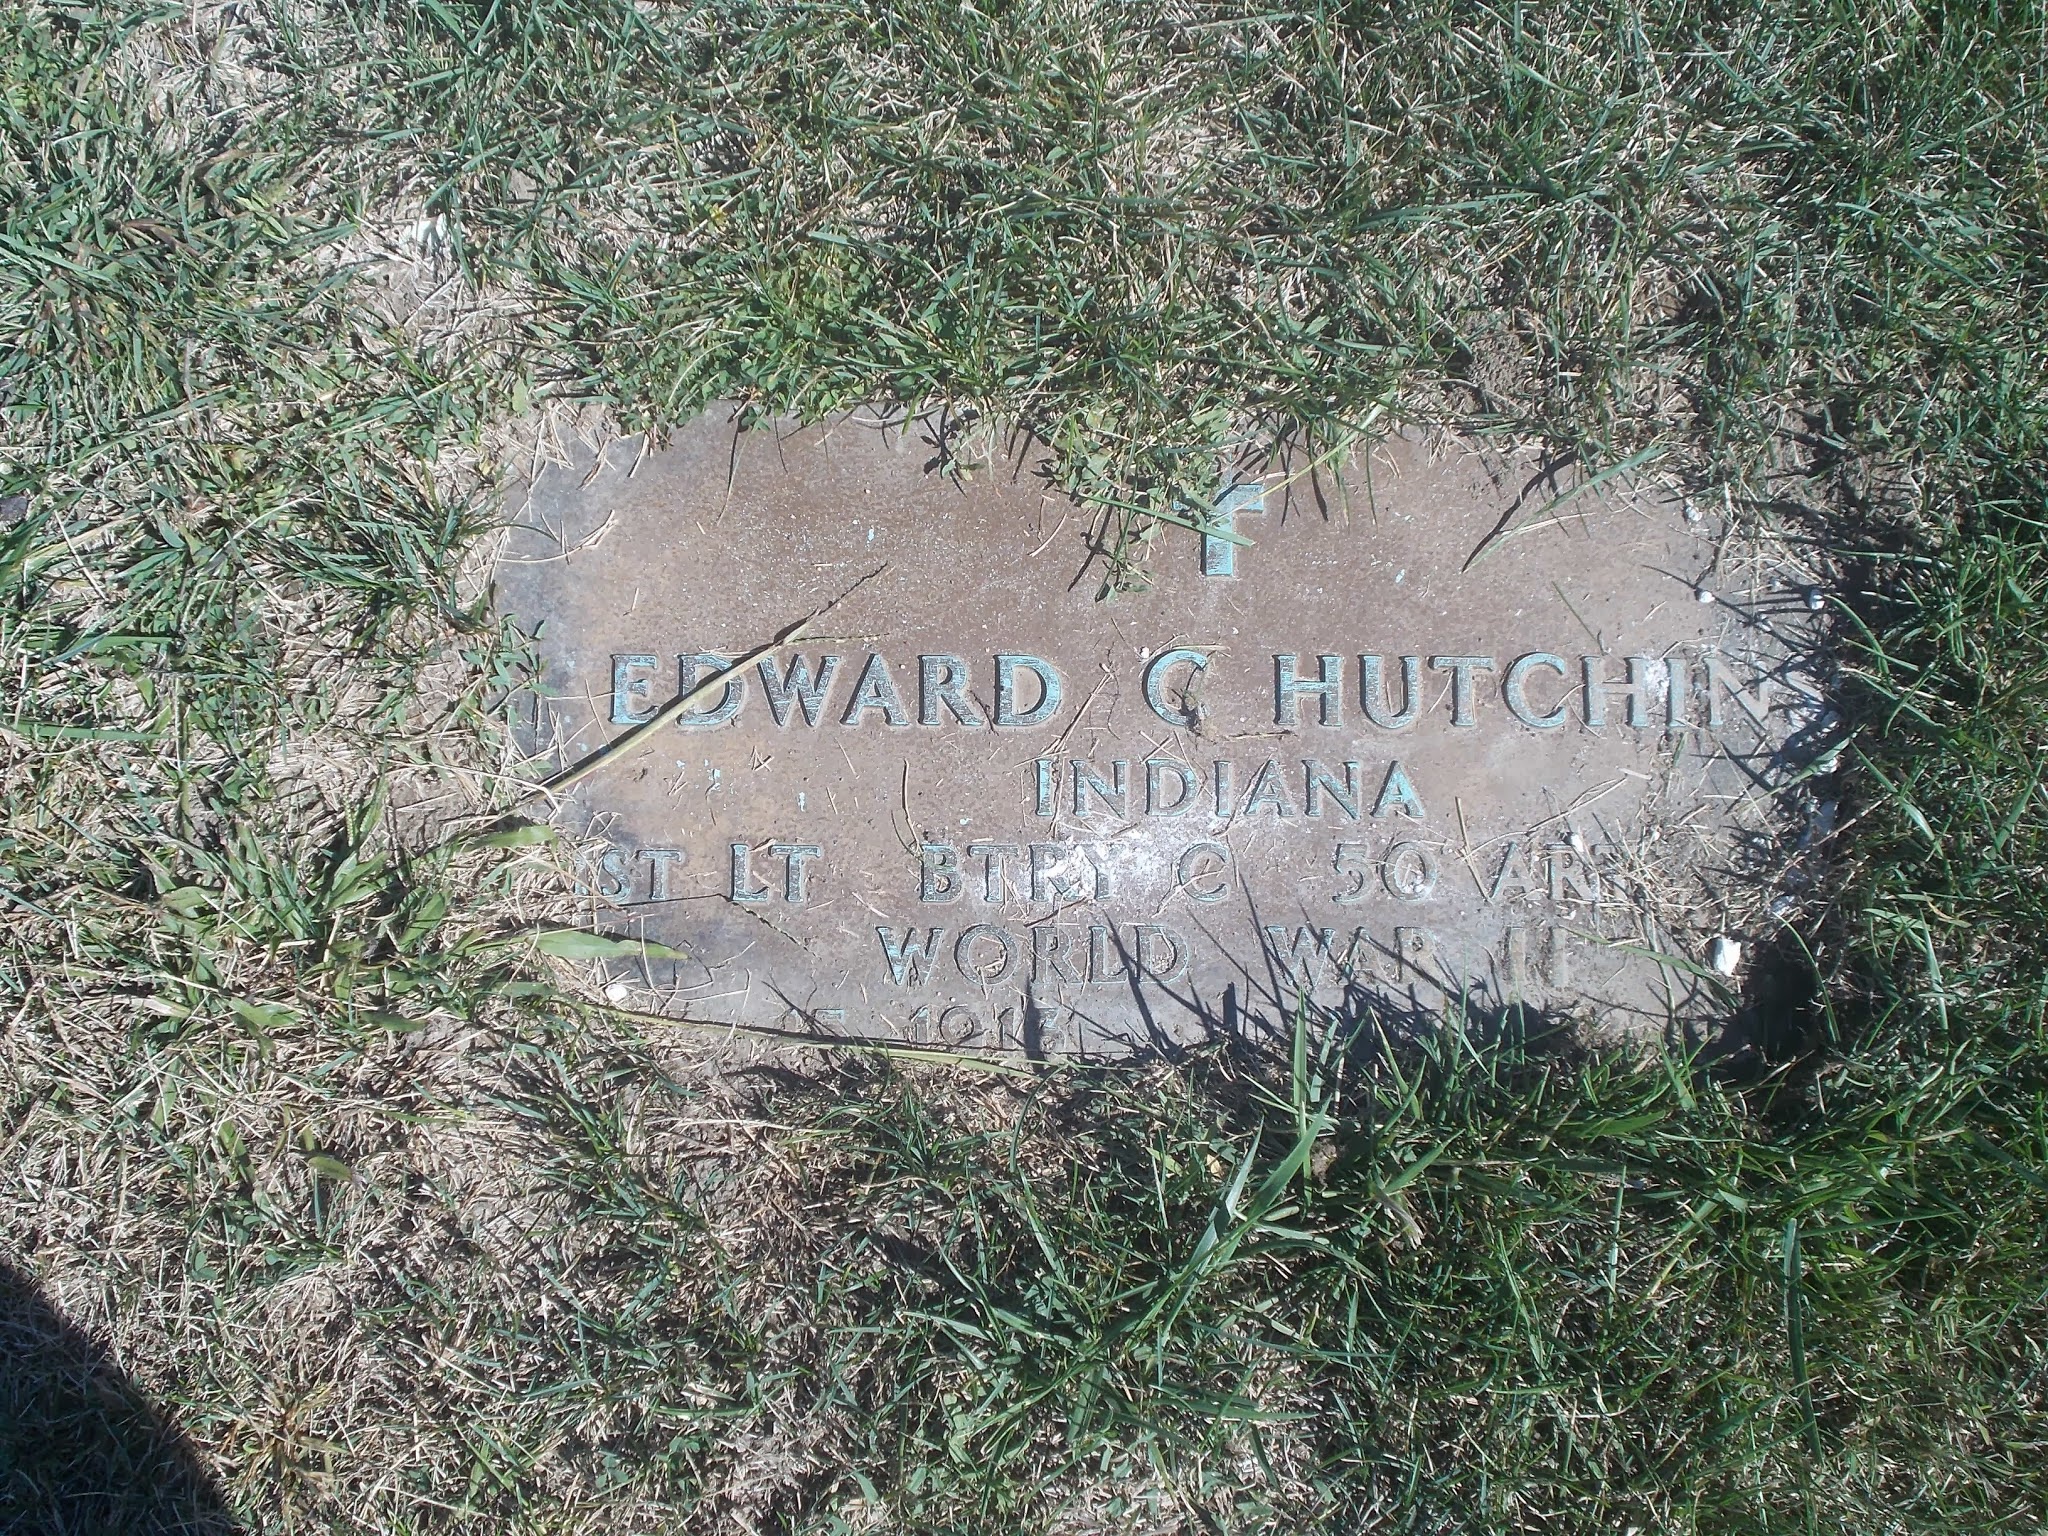 Edward C Hutchins